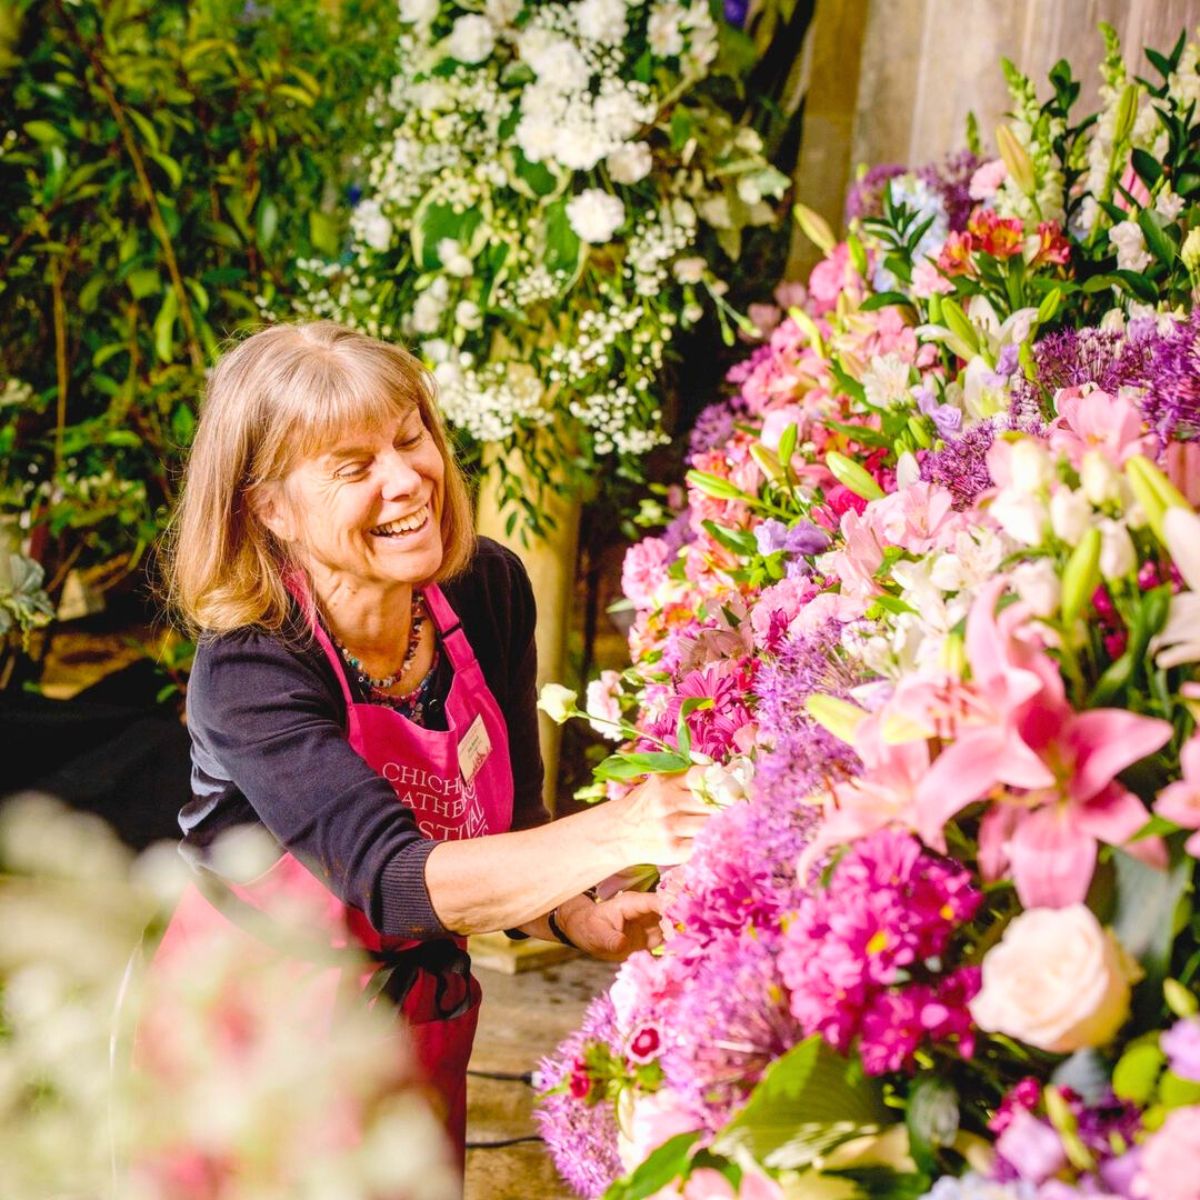 Floral workshops at Chichester